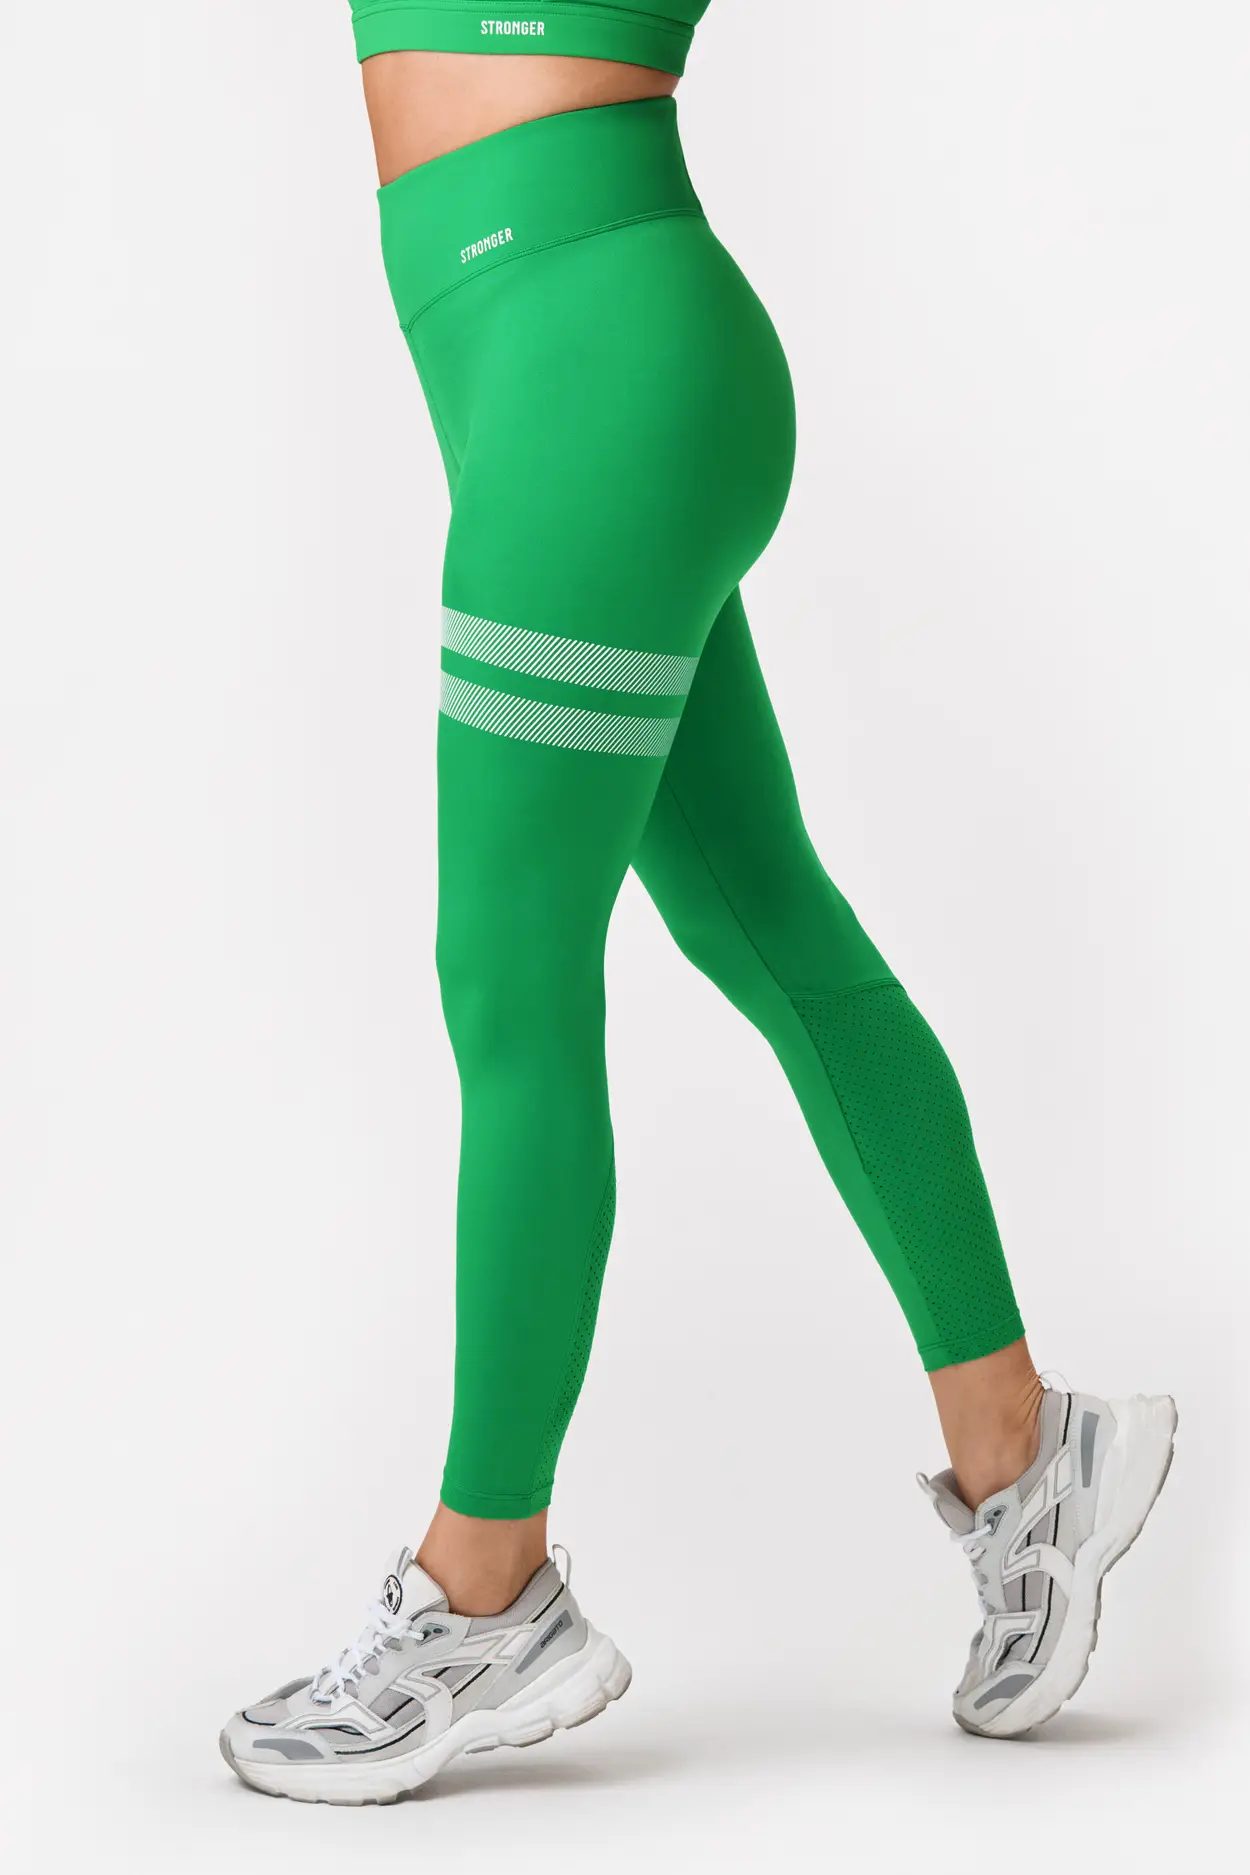 Power UltraSculpt High-Waisted 7/8 Gym Leggings - Trek Green, Women's  Leggings